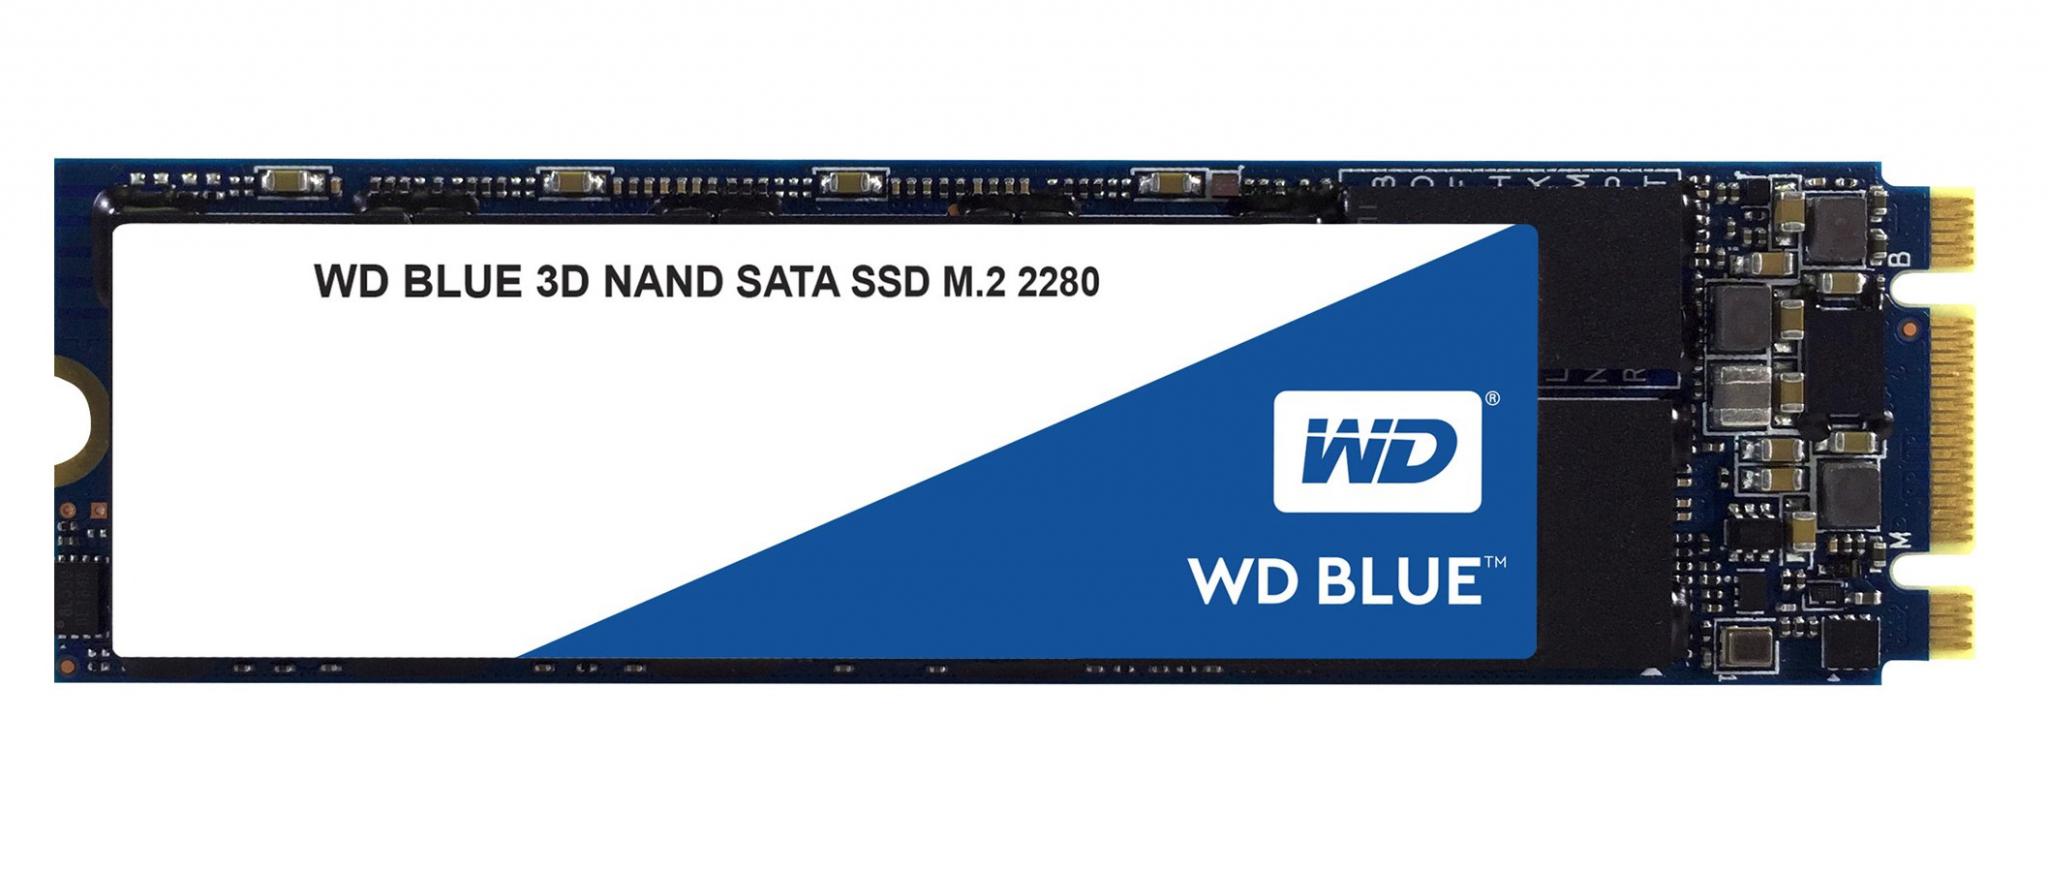 SSD WD Blue SN550 500GB PCI Express 3.0 x4 M.2 2280